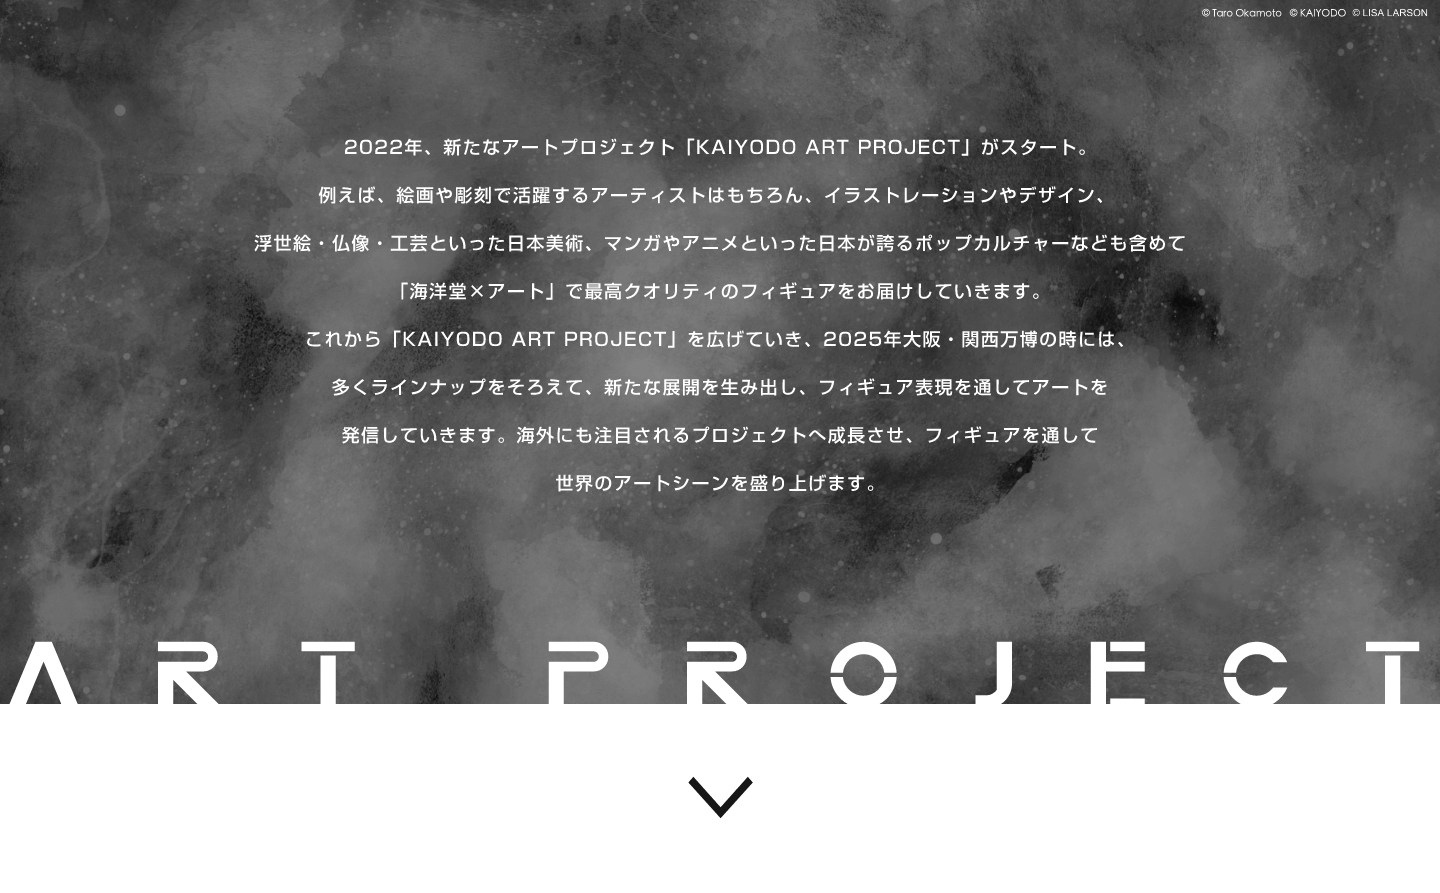 2022年、新たなアートプロジェクト「KAIYODO ART PROJECT」がスタート。